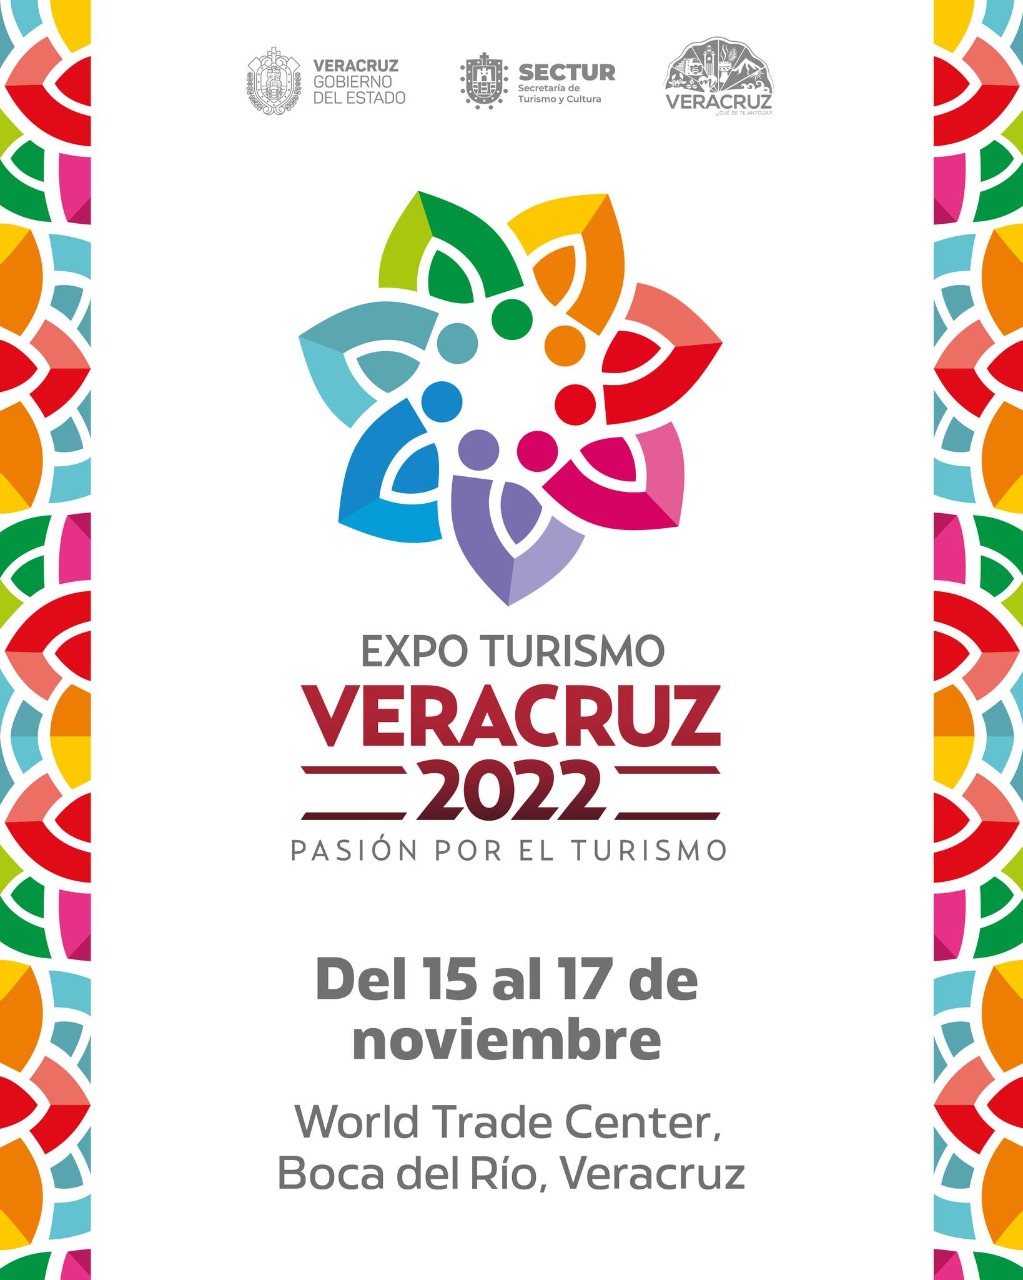 Más de 200 empresas participarán en Expo Turismo Veracruz 2022